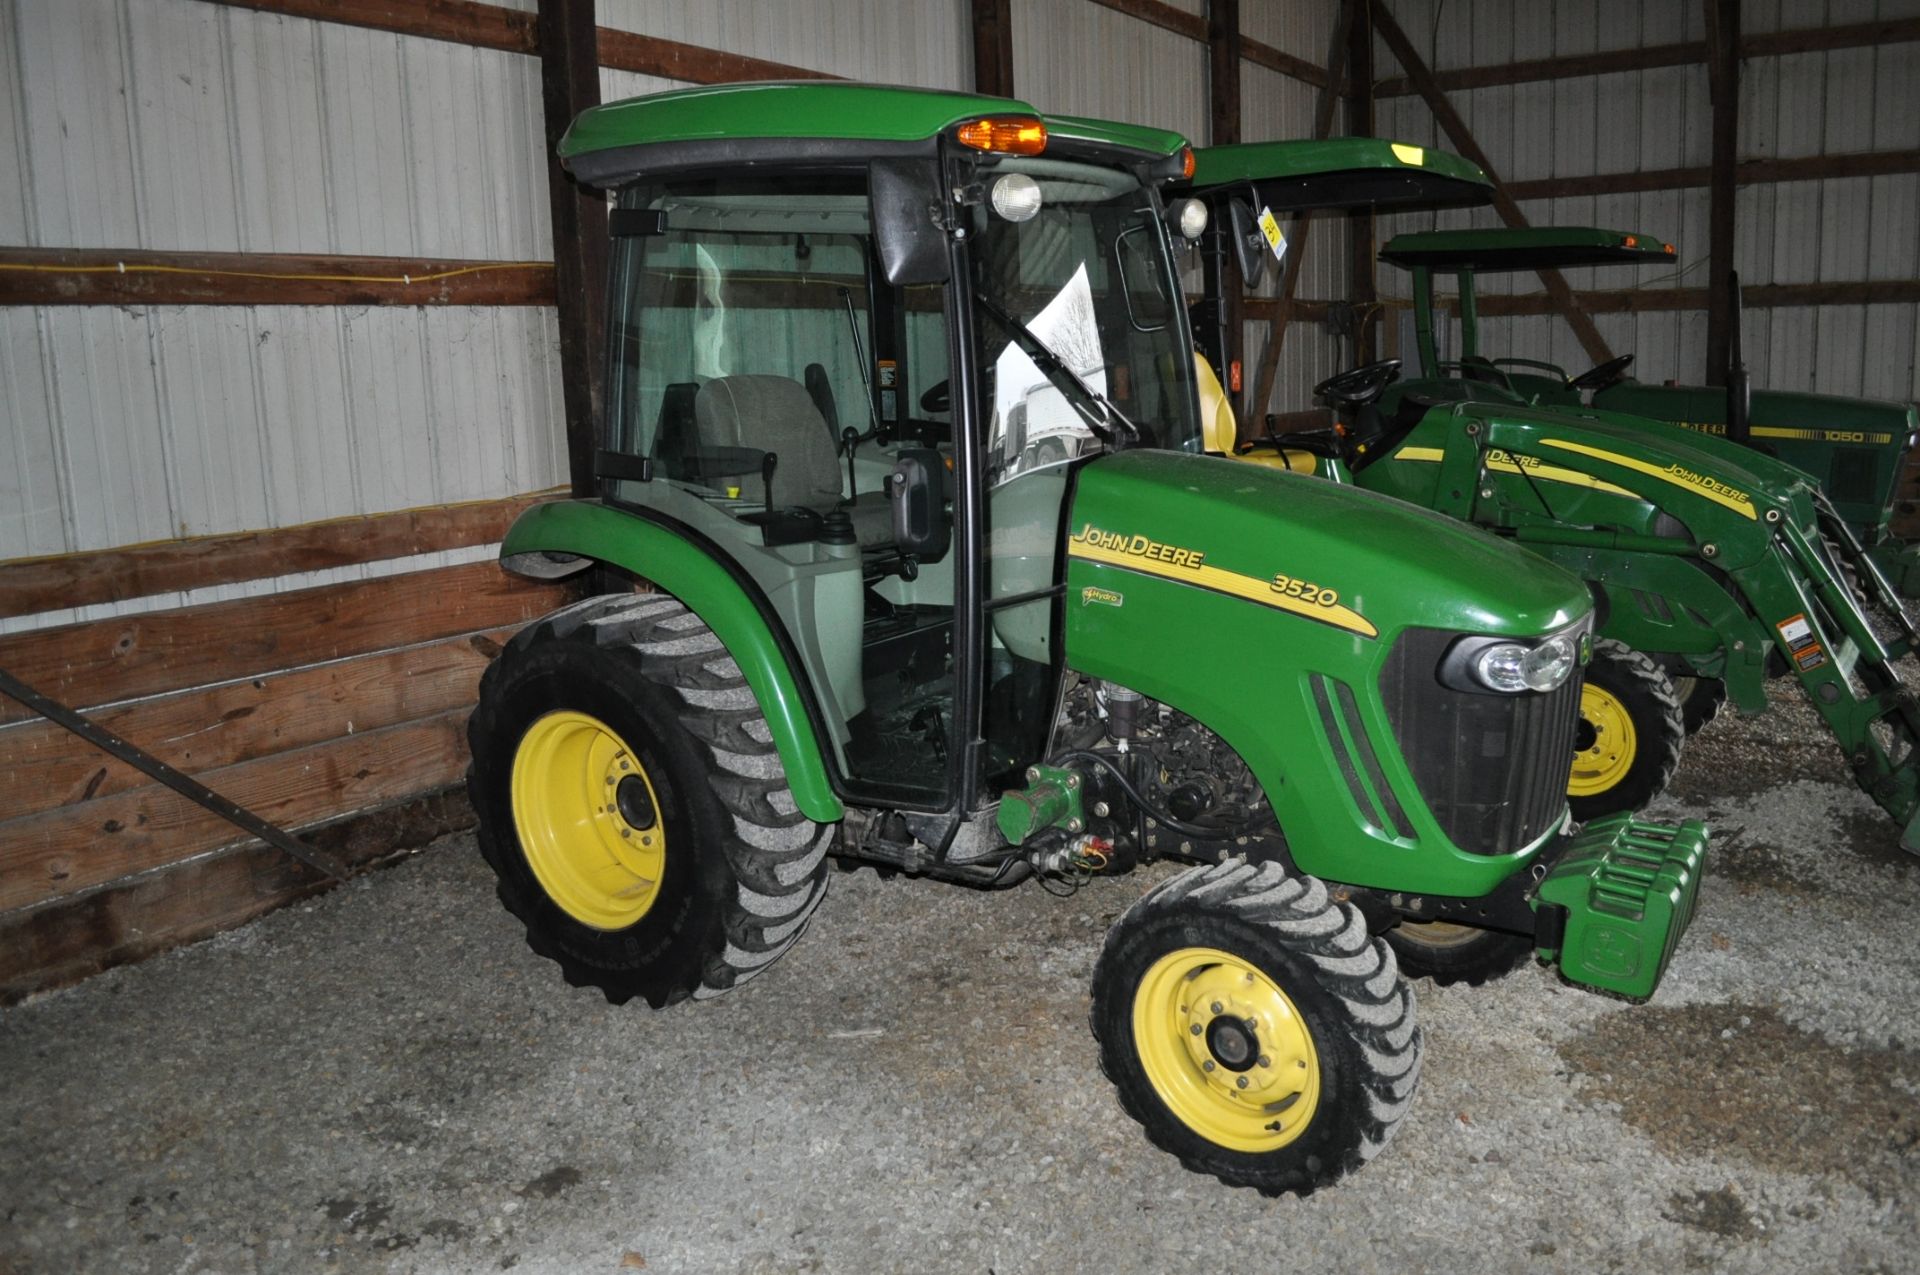 John Deere 3520 utility tractor, MFWD, CHA, loader mount, joystick, 3 pt, 540 pto, 365 hrs - Image 2 of 15